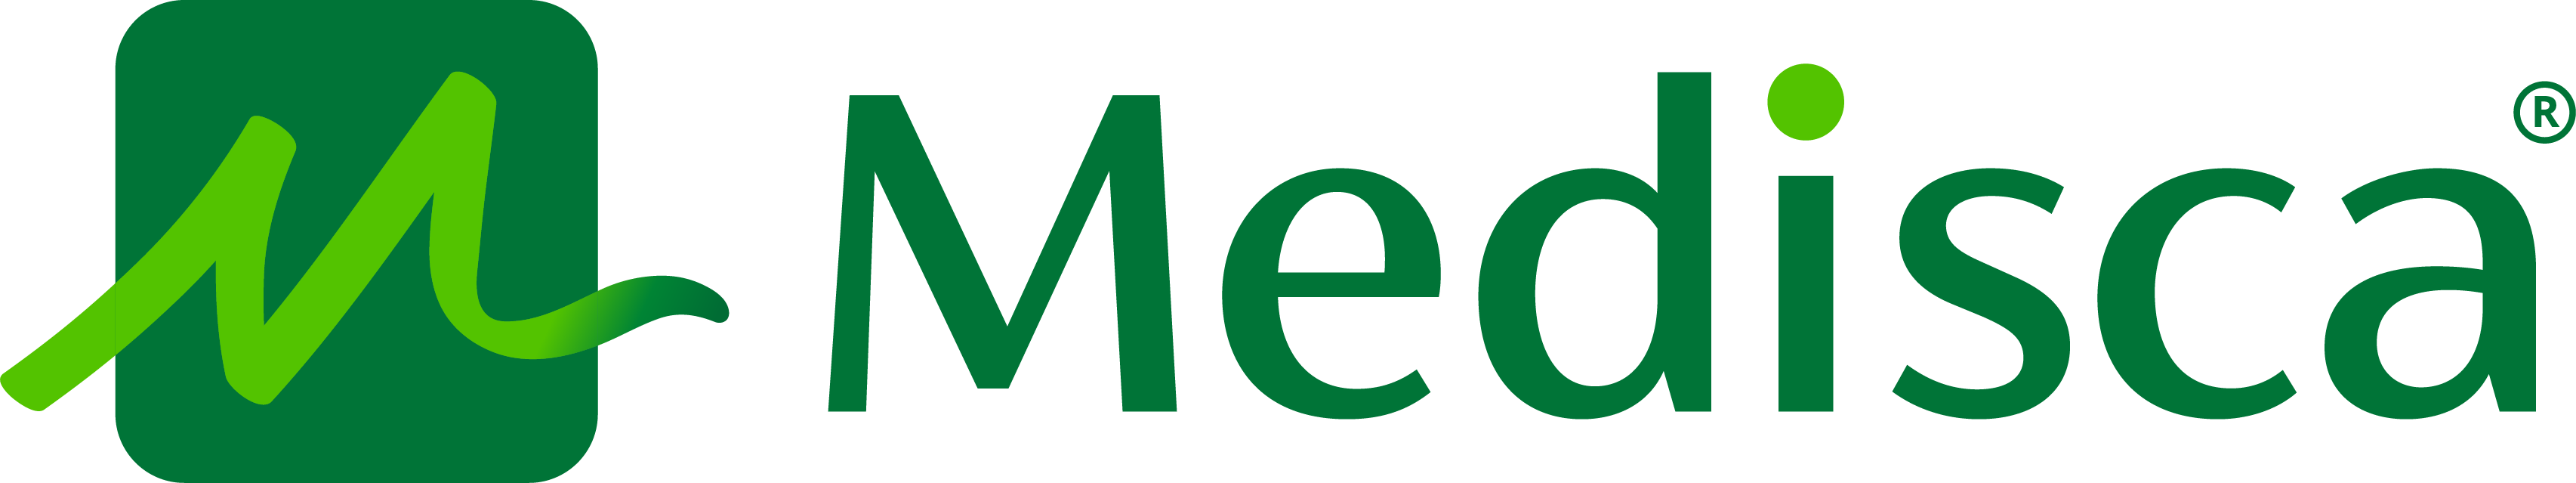 Medisca Logo - Colour